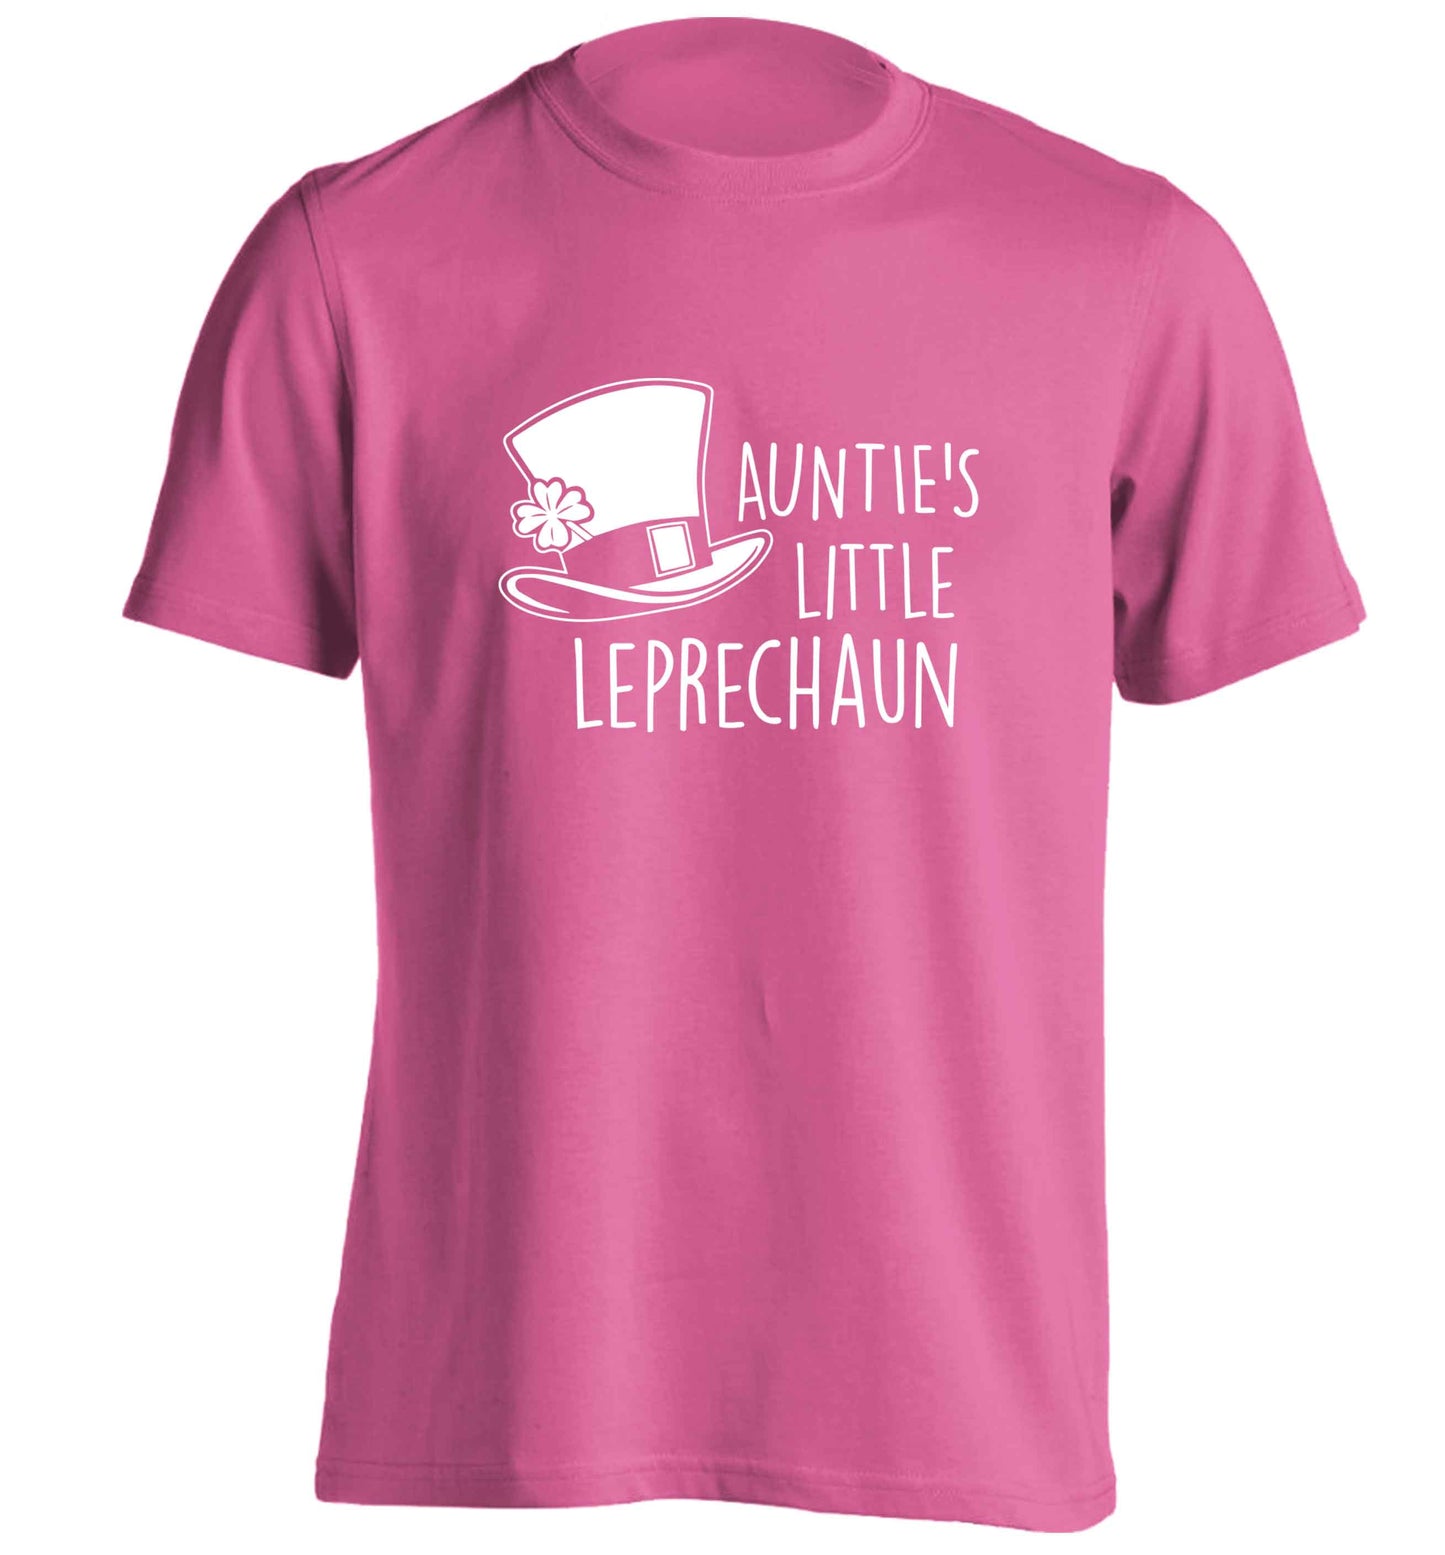 Auntie's little leprechaun adults unisex pink Tshirt 2XL